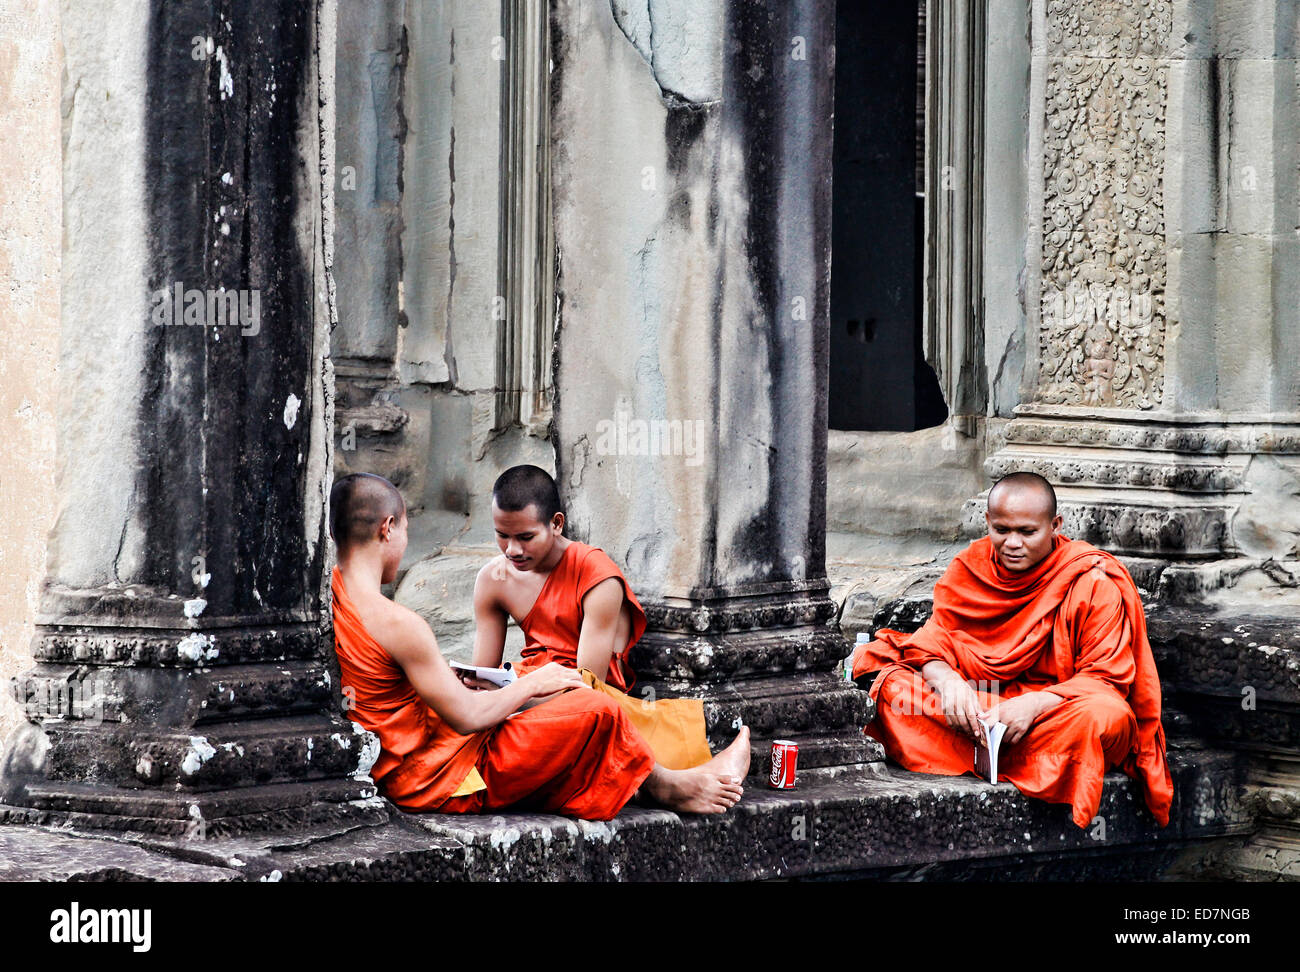 Les moines bouddhistes au temple d'Angkor Wat au Cambodge Banque D'Images